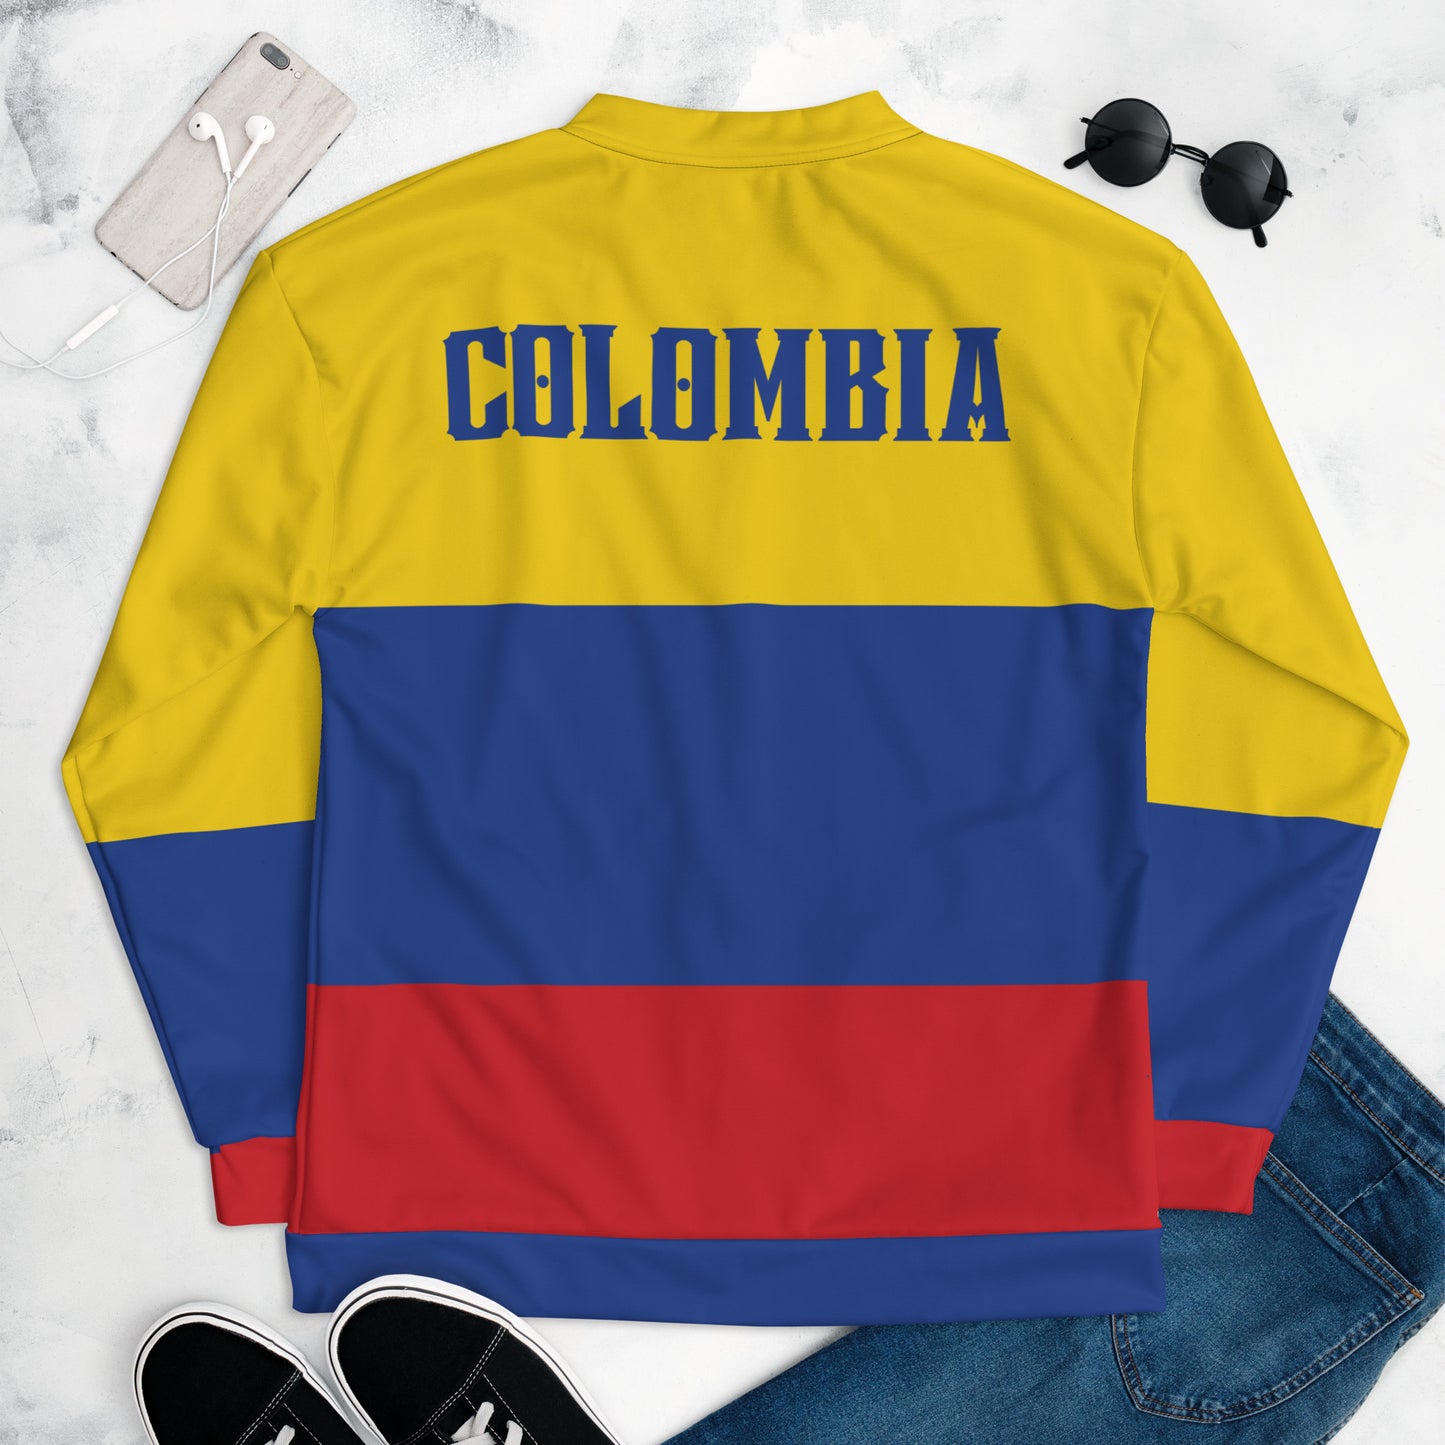 Chefao Colombia I, Unisex Bomber Jacket